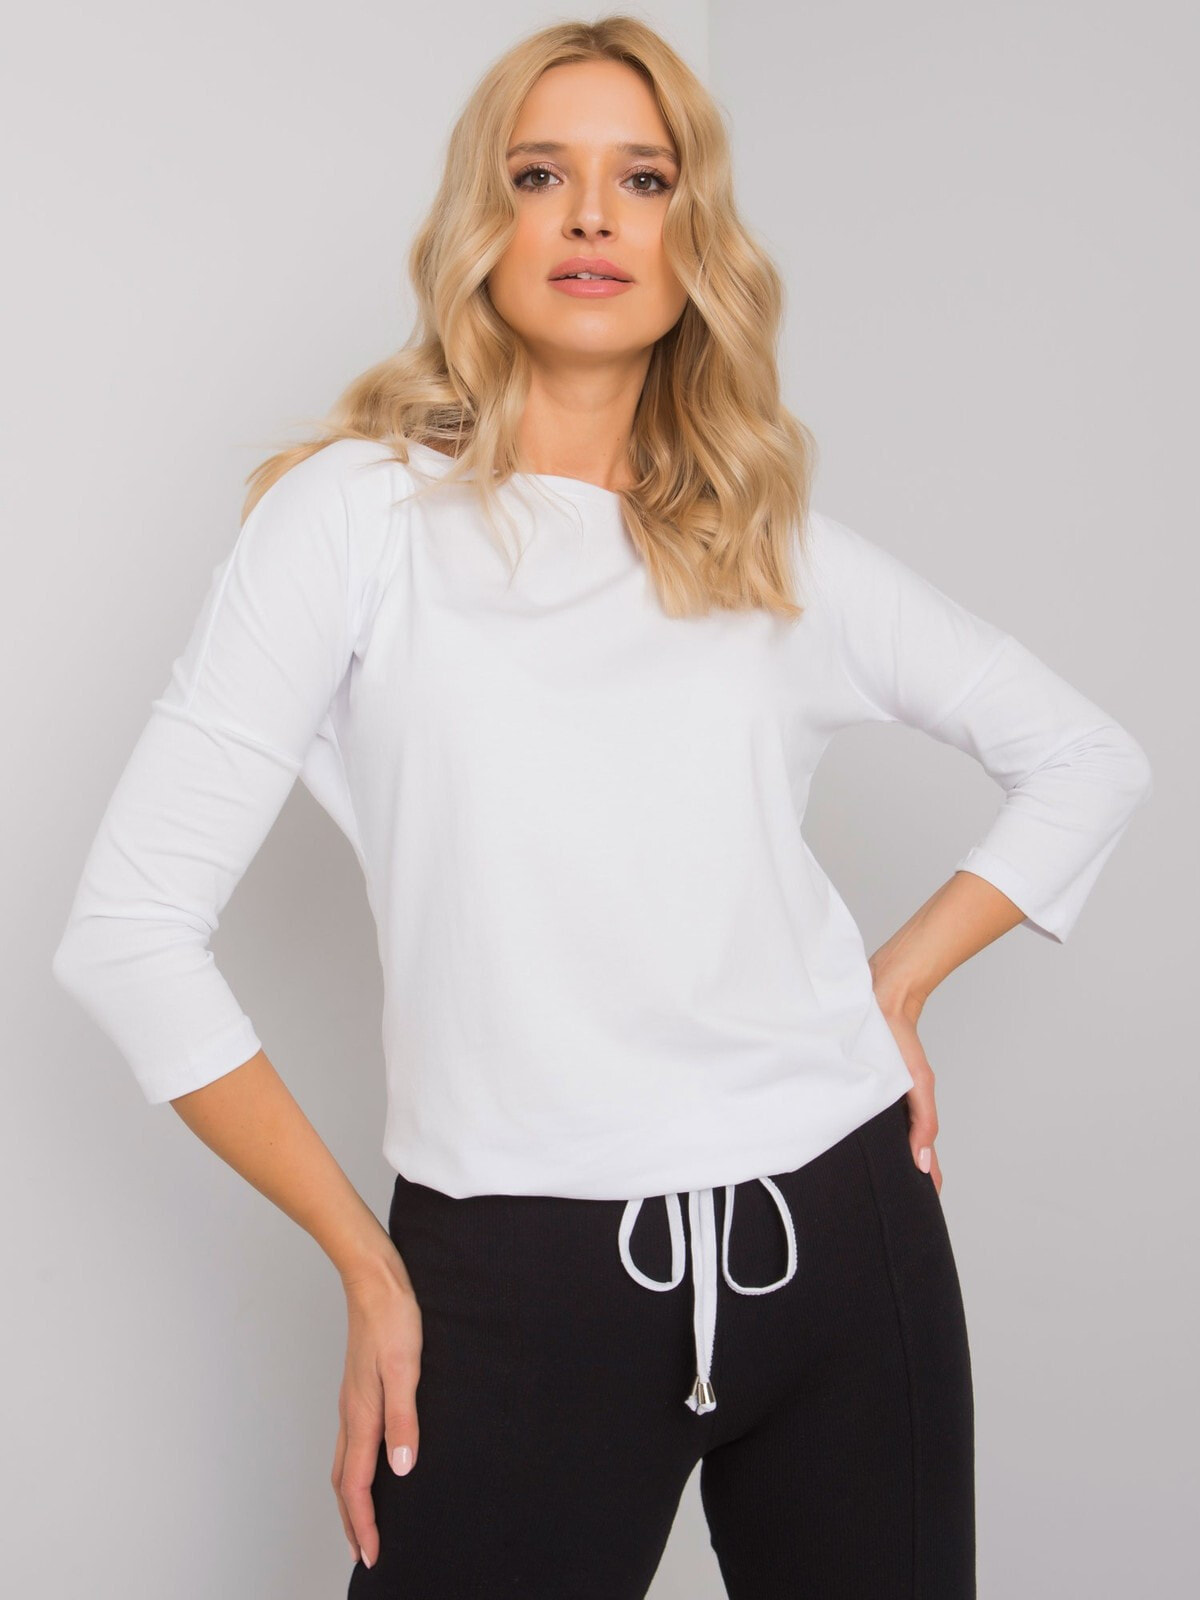 Женская блузка свободного кроя на завязках с длинным рукавом белая Factory Price